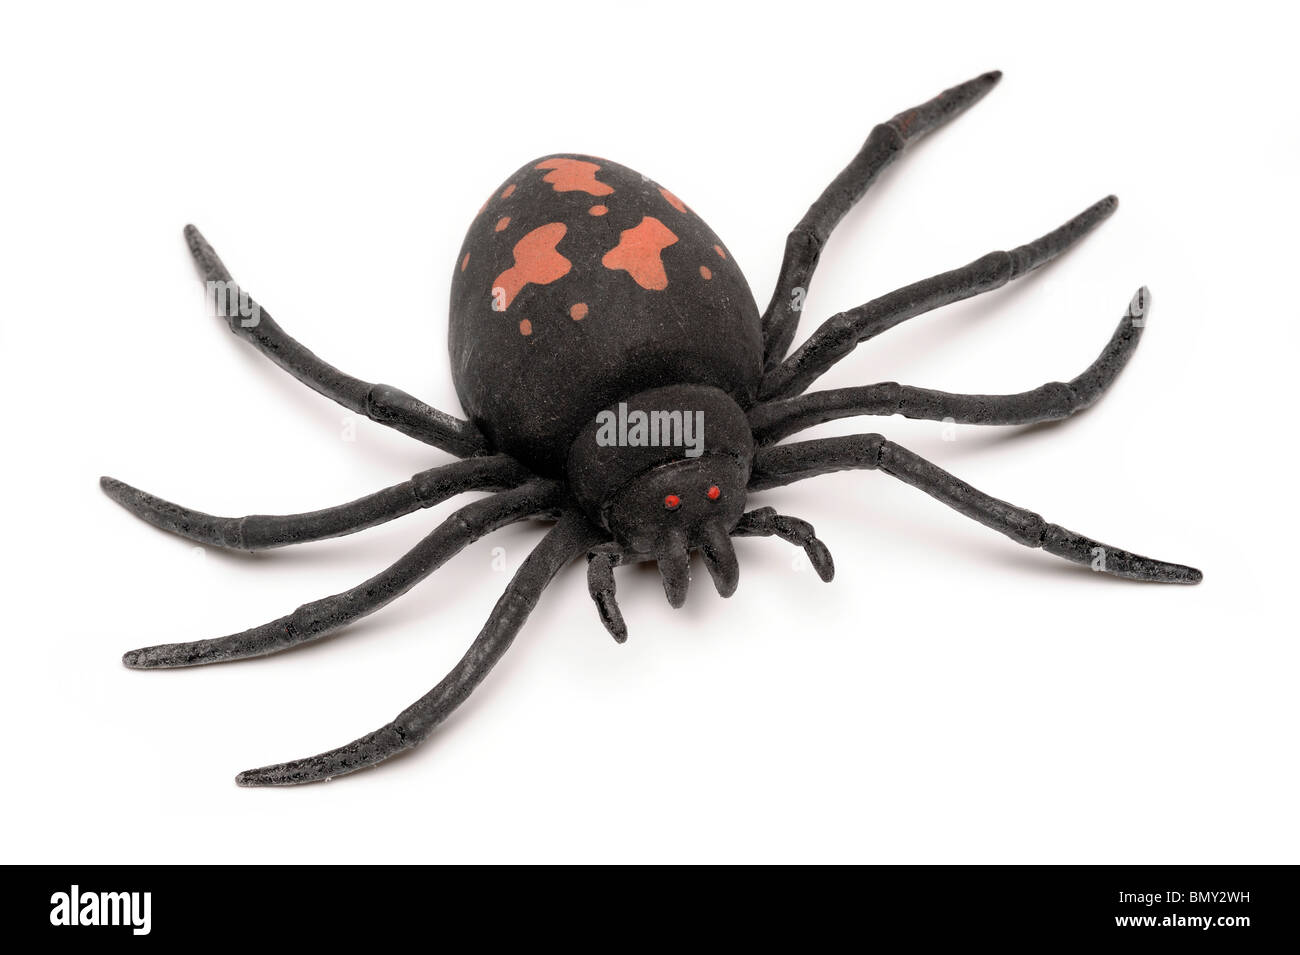 Big Black spider caoutchouc jouet Banque D'Images